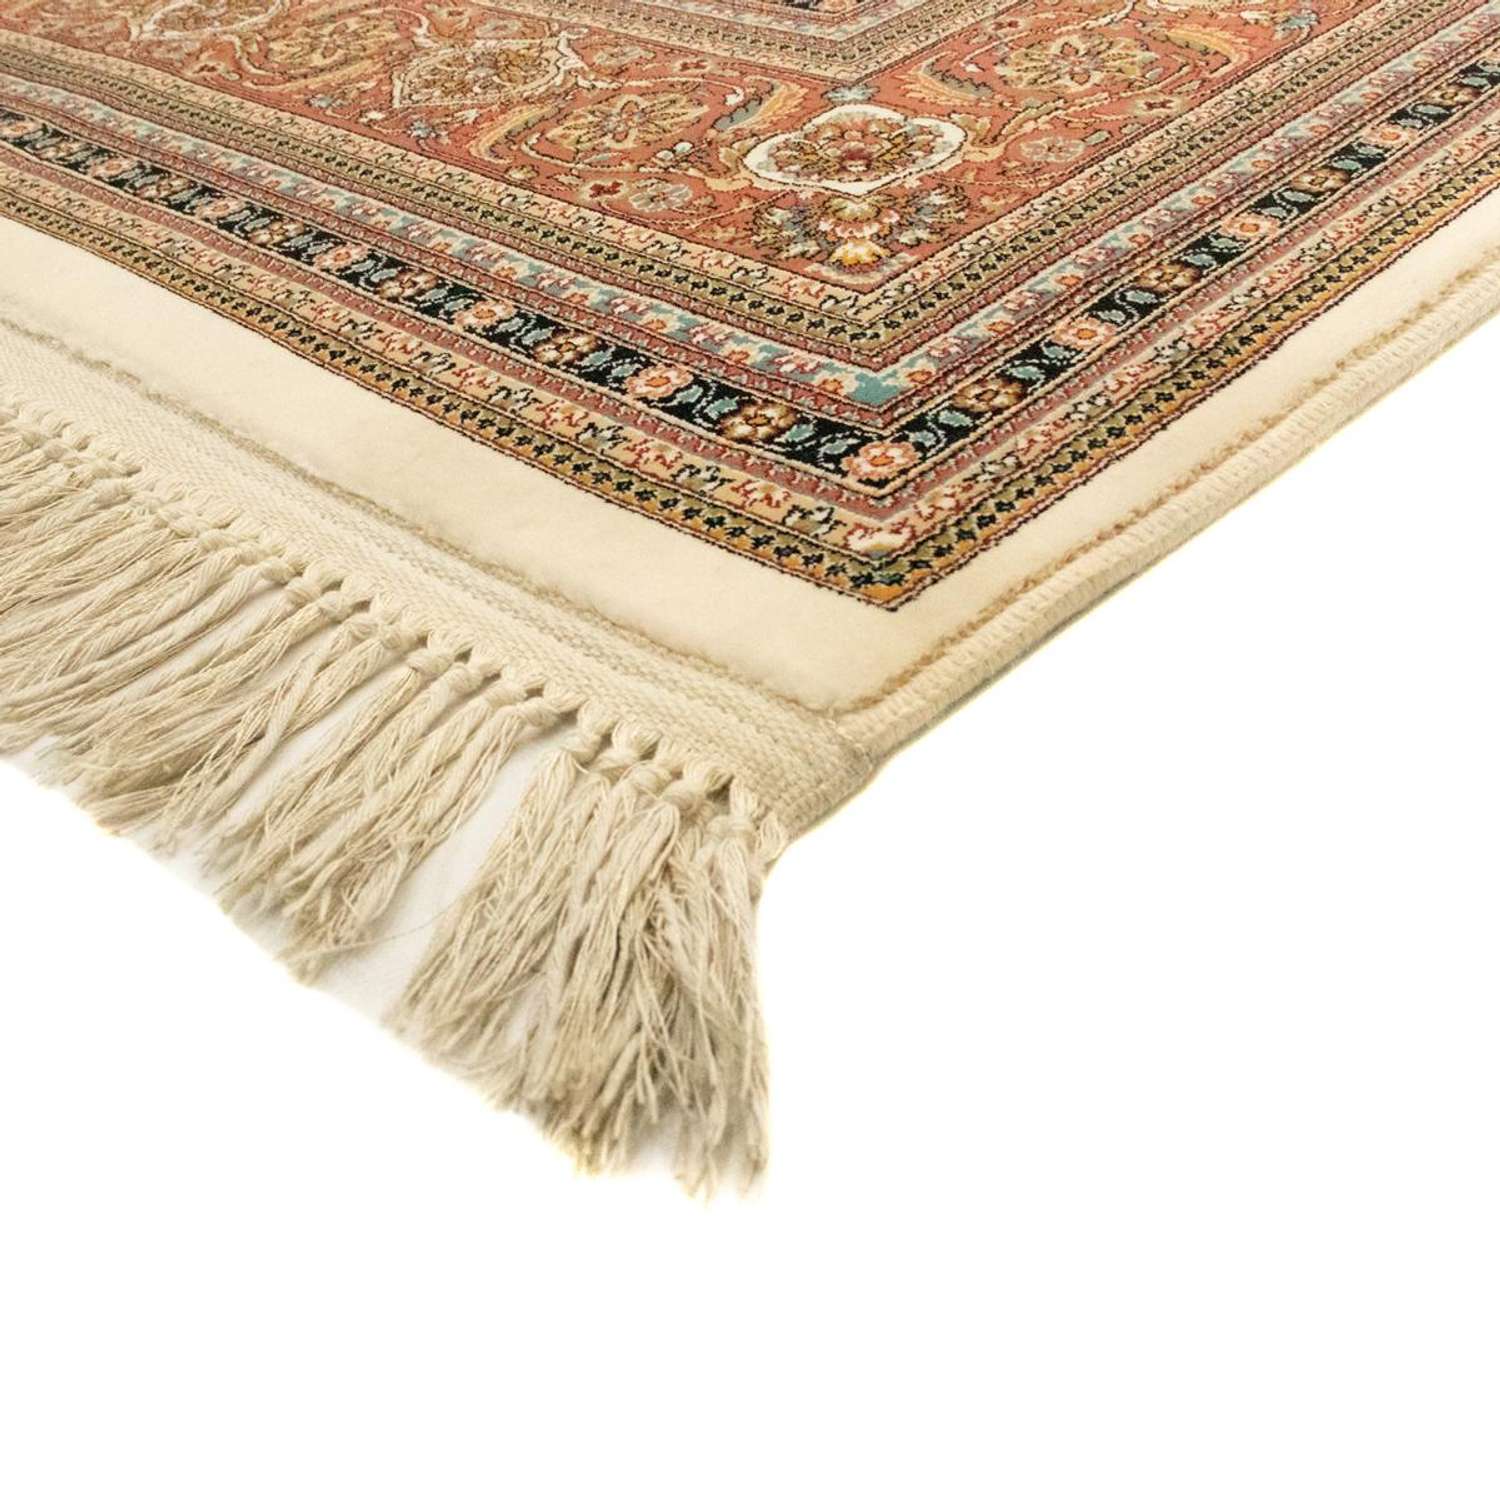 Orientalsk tæppe - Excellent - løber